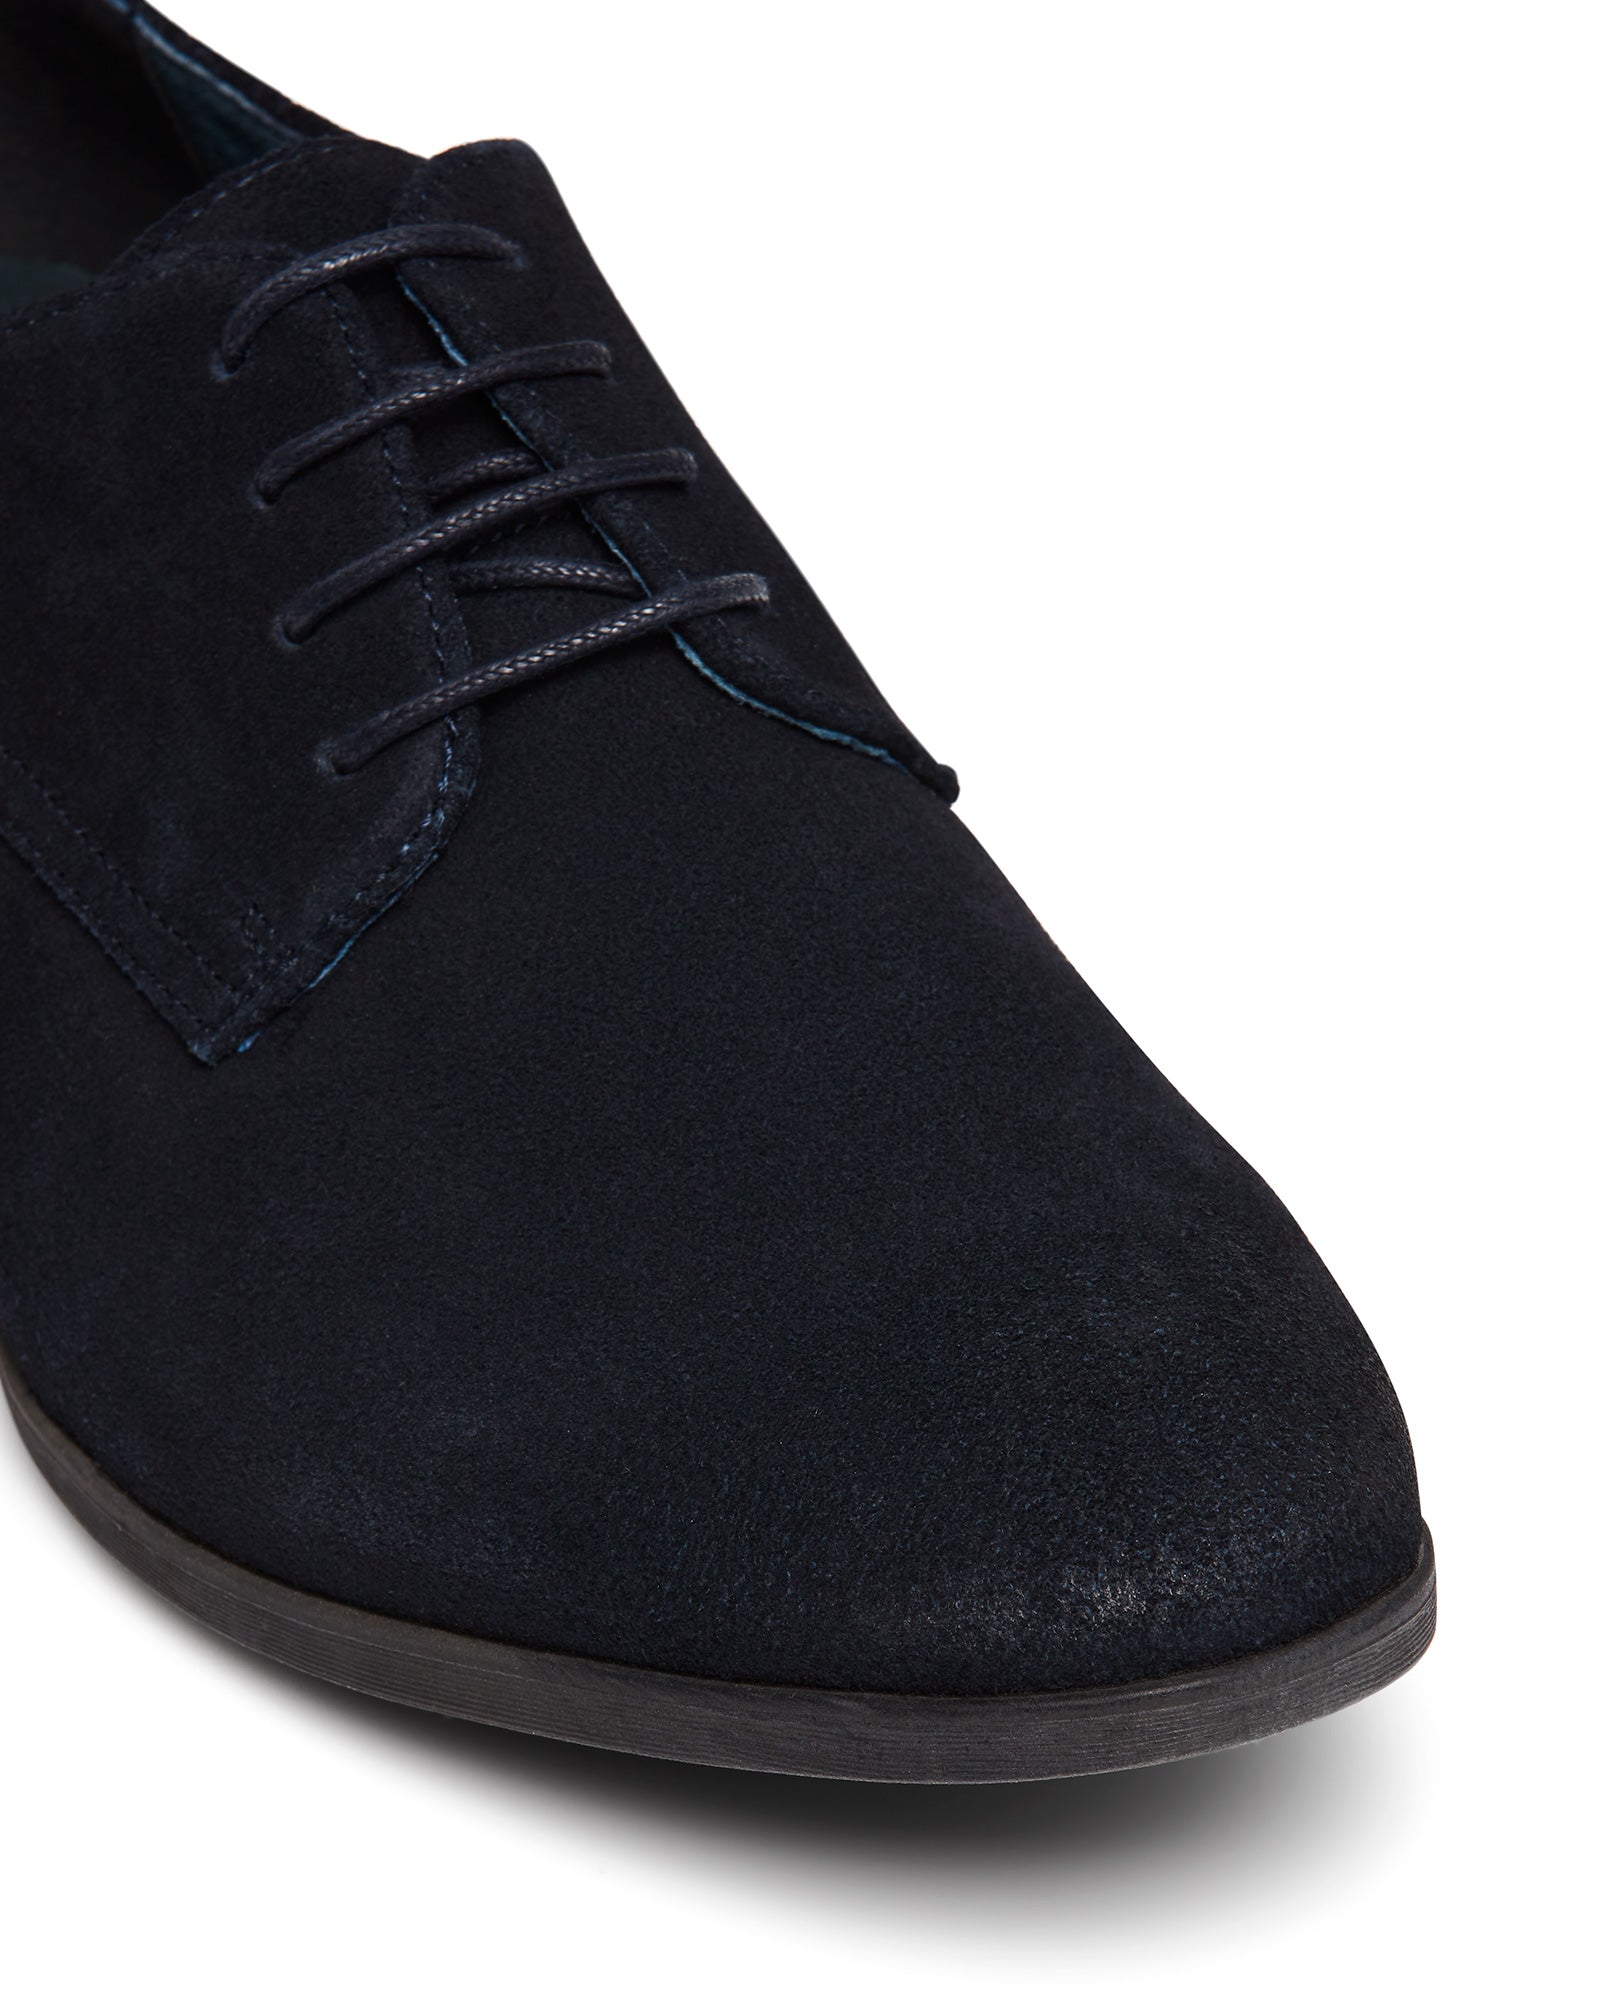 Uncut Shoes Tremblant Navy | Men's Leather Dress Shoe | Derby | Lace Up 